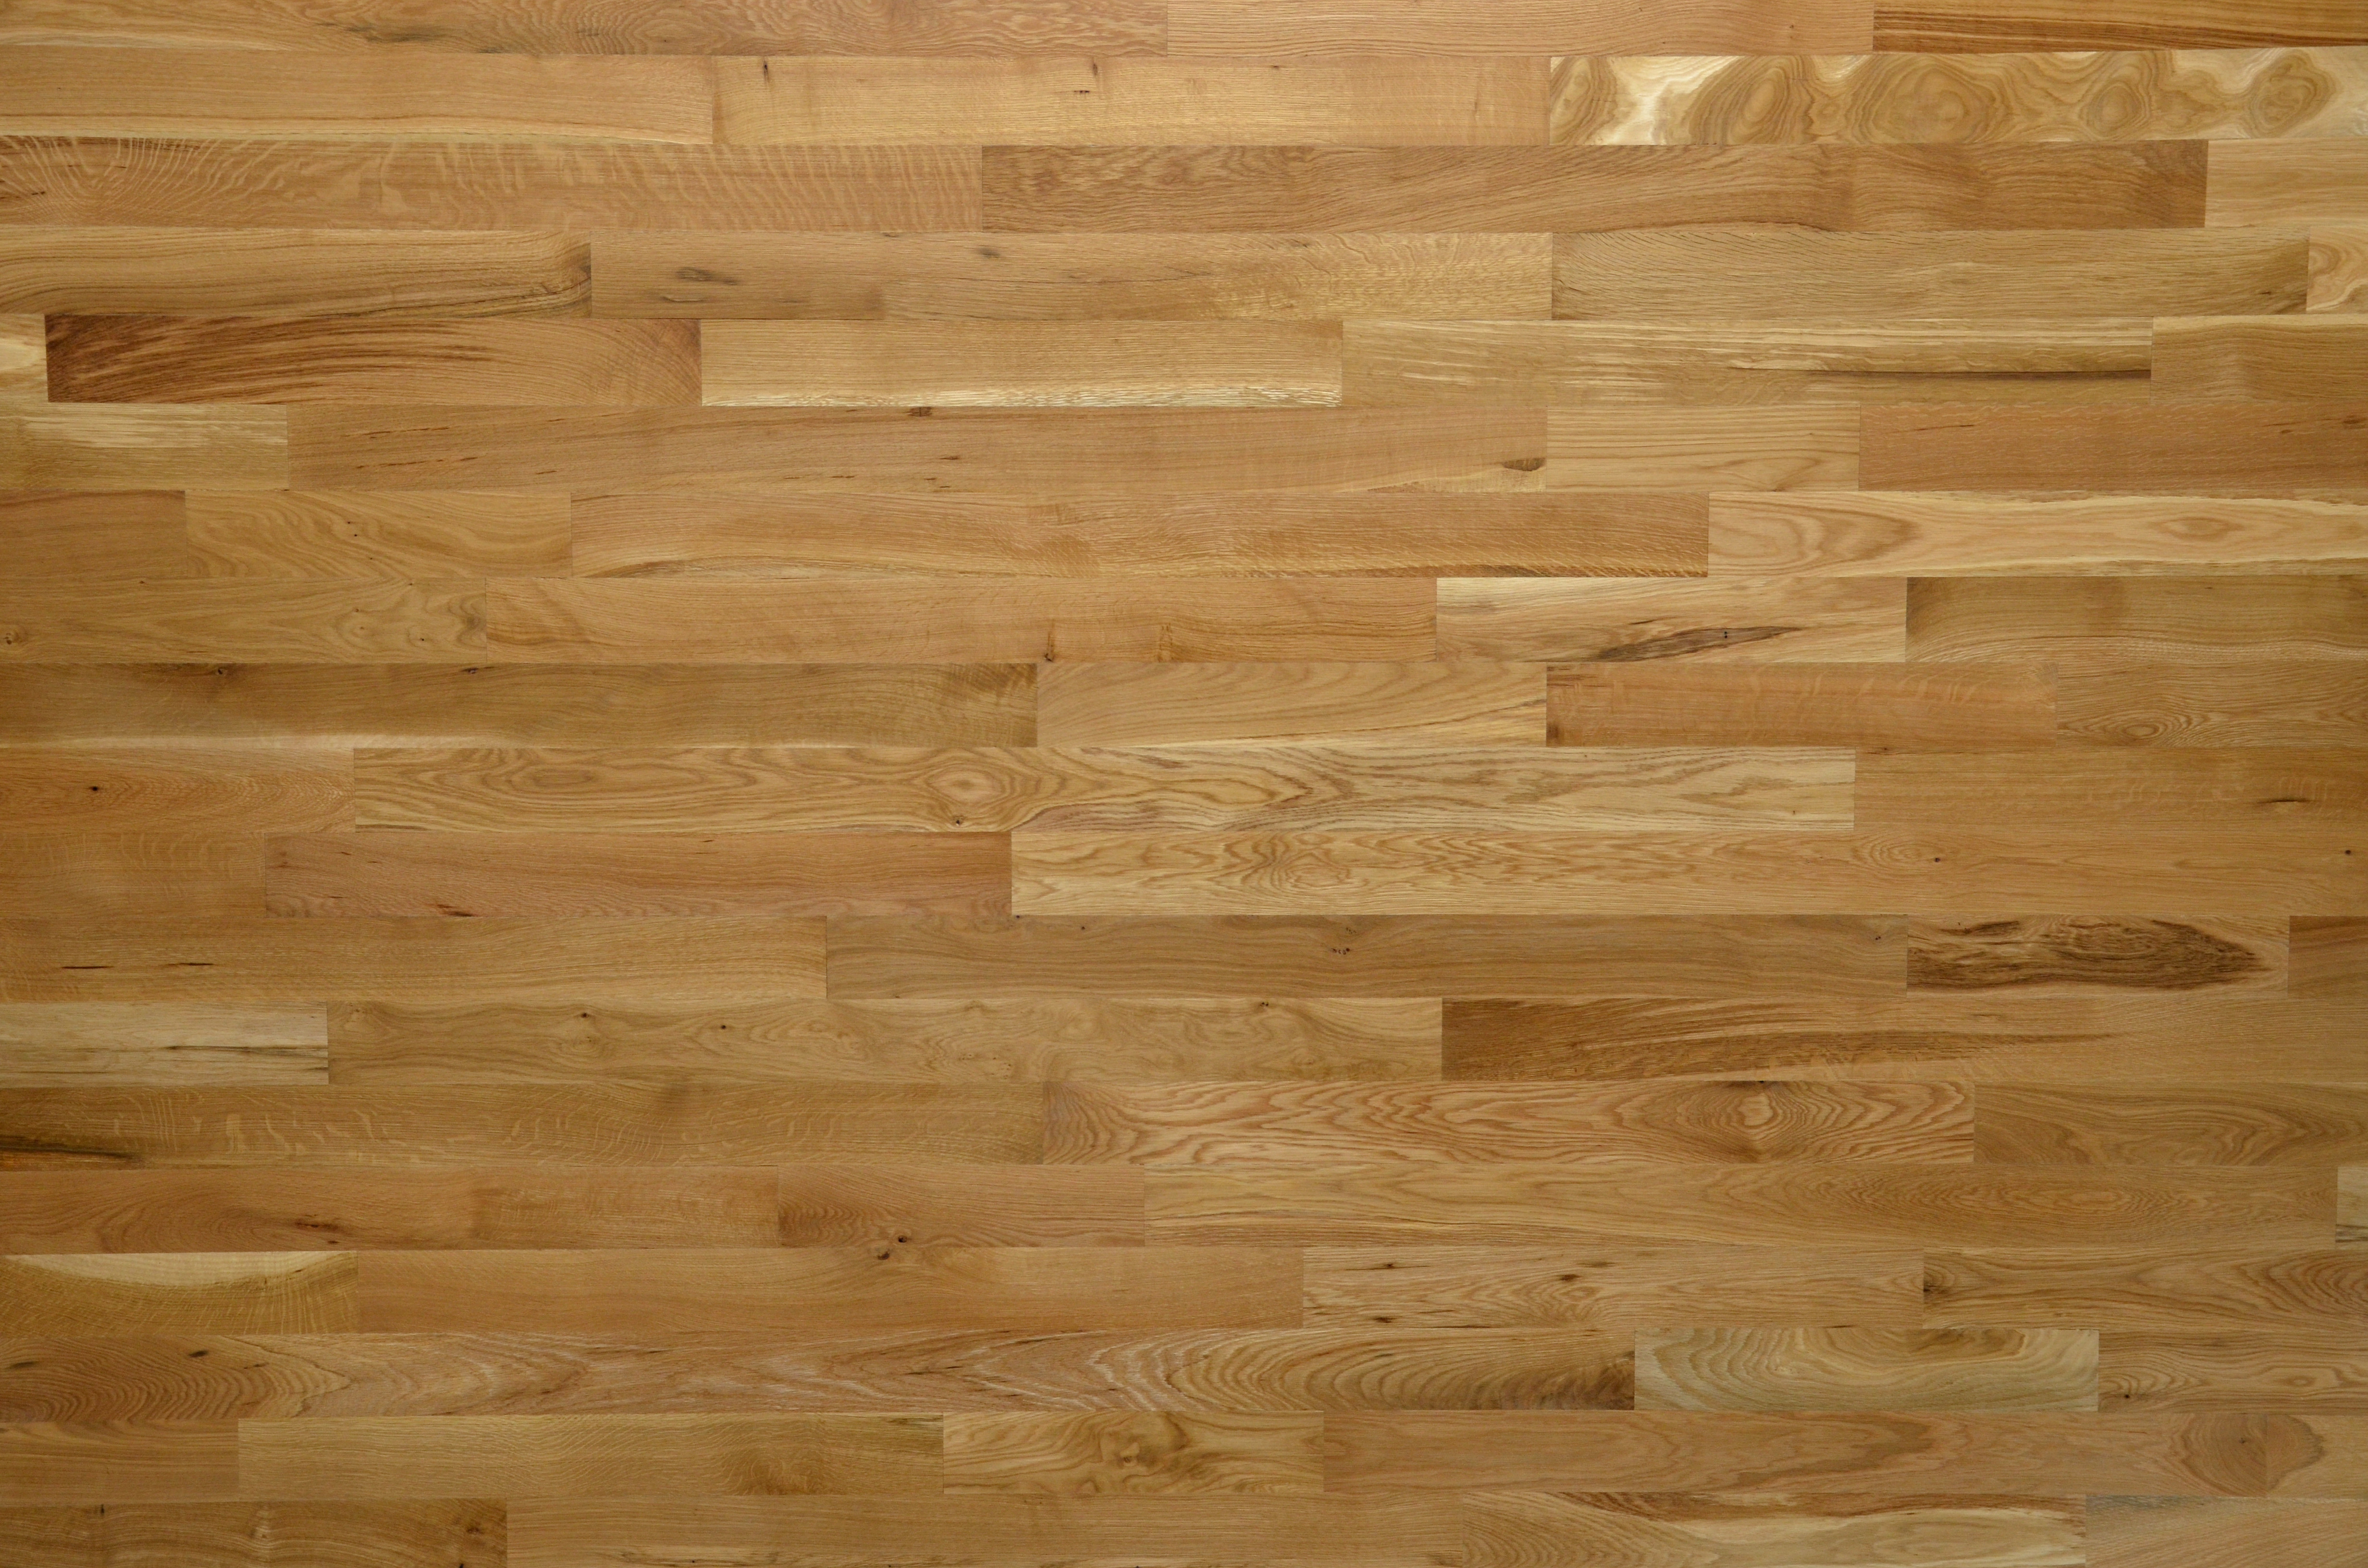 18 Ideal Hardwood Flooring Wall Jack 2024 free download hardwood flooring wall jack of lacrosse hardwood flooring walnut white oak red oak hickory intended for 1 common white oak